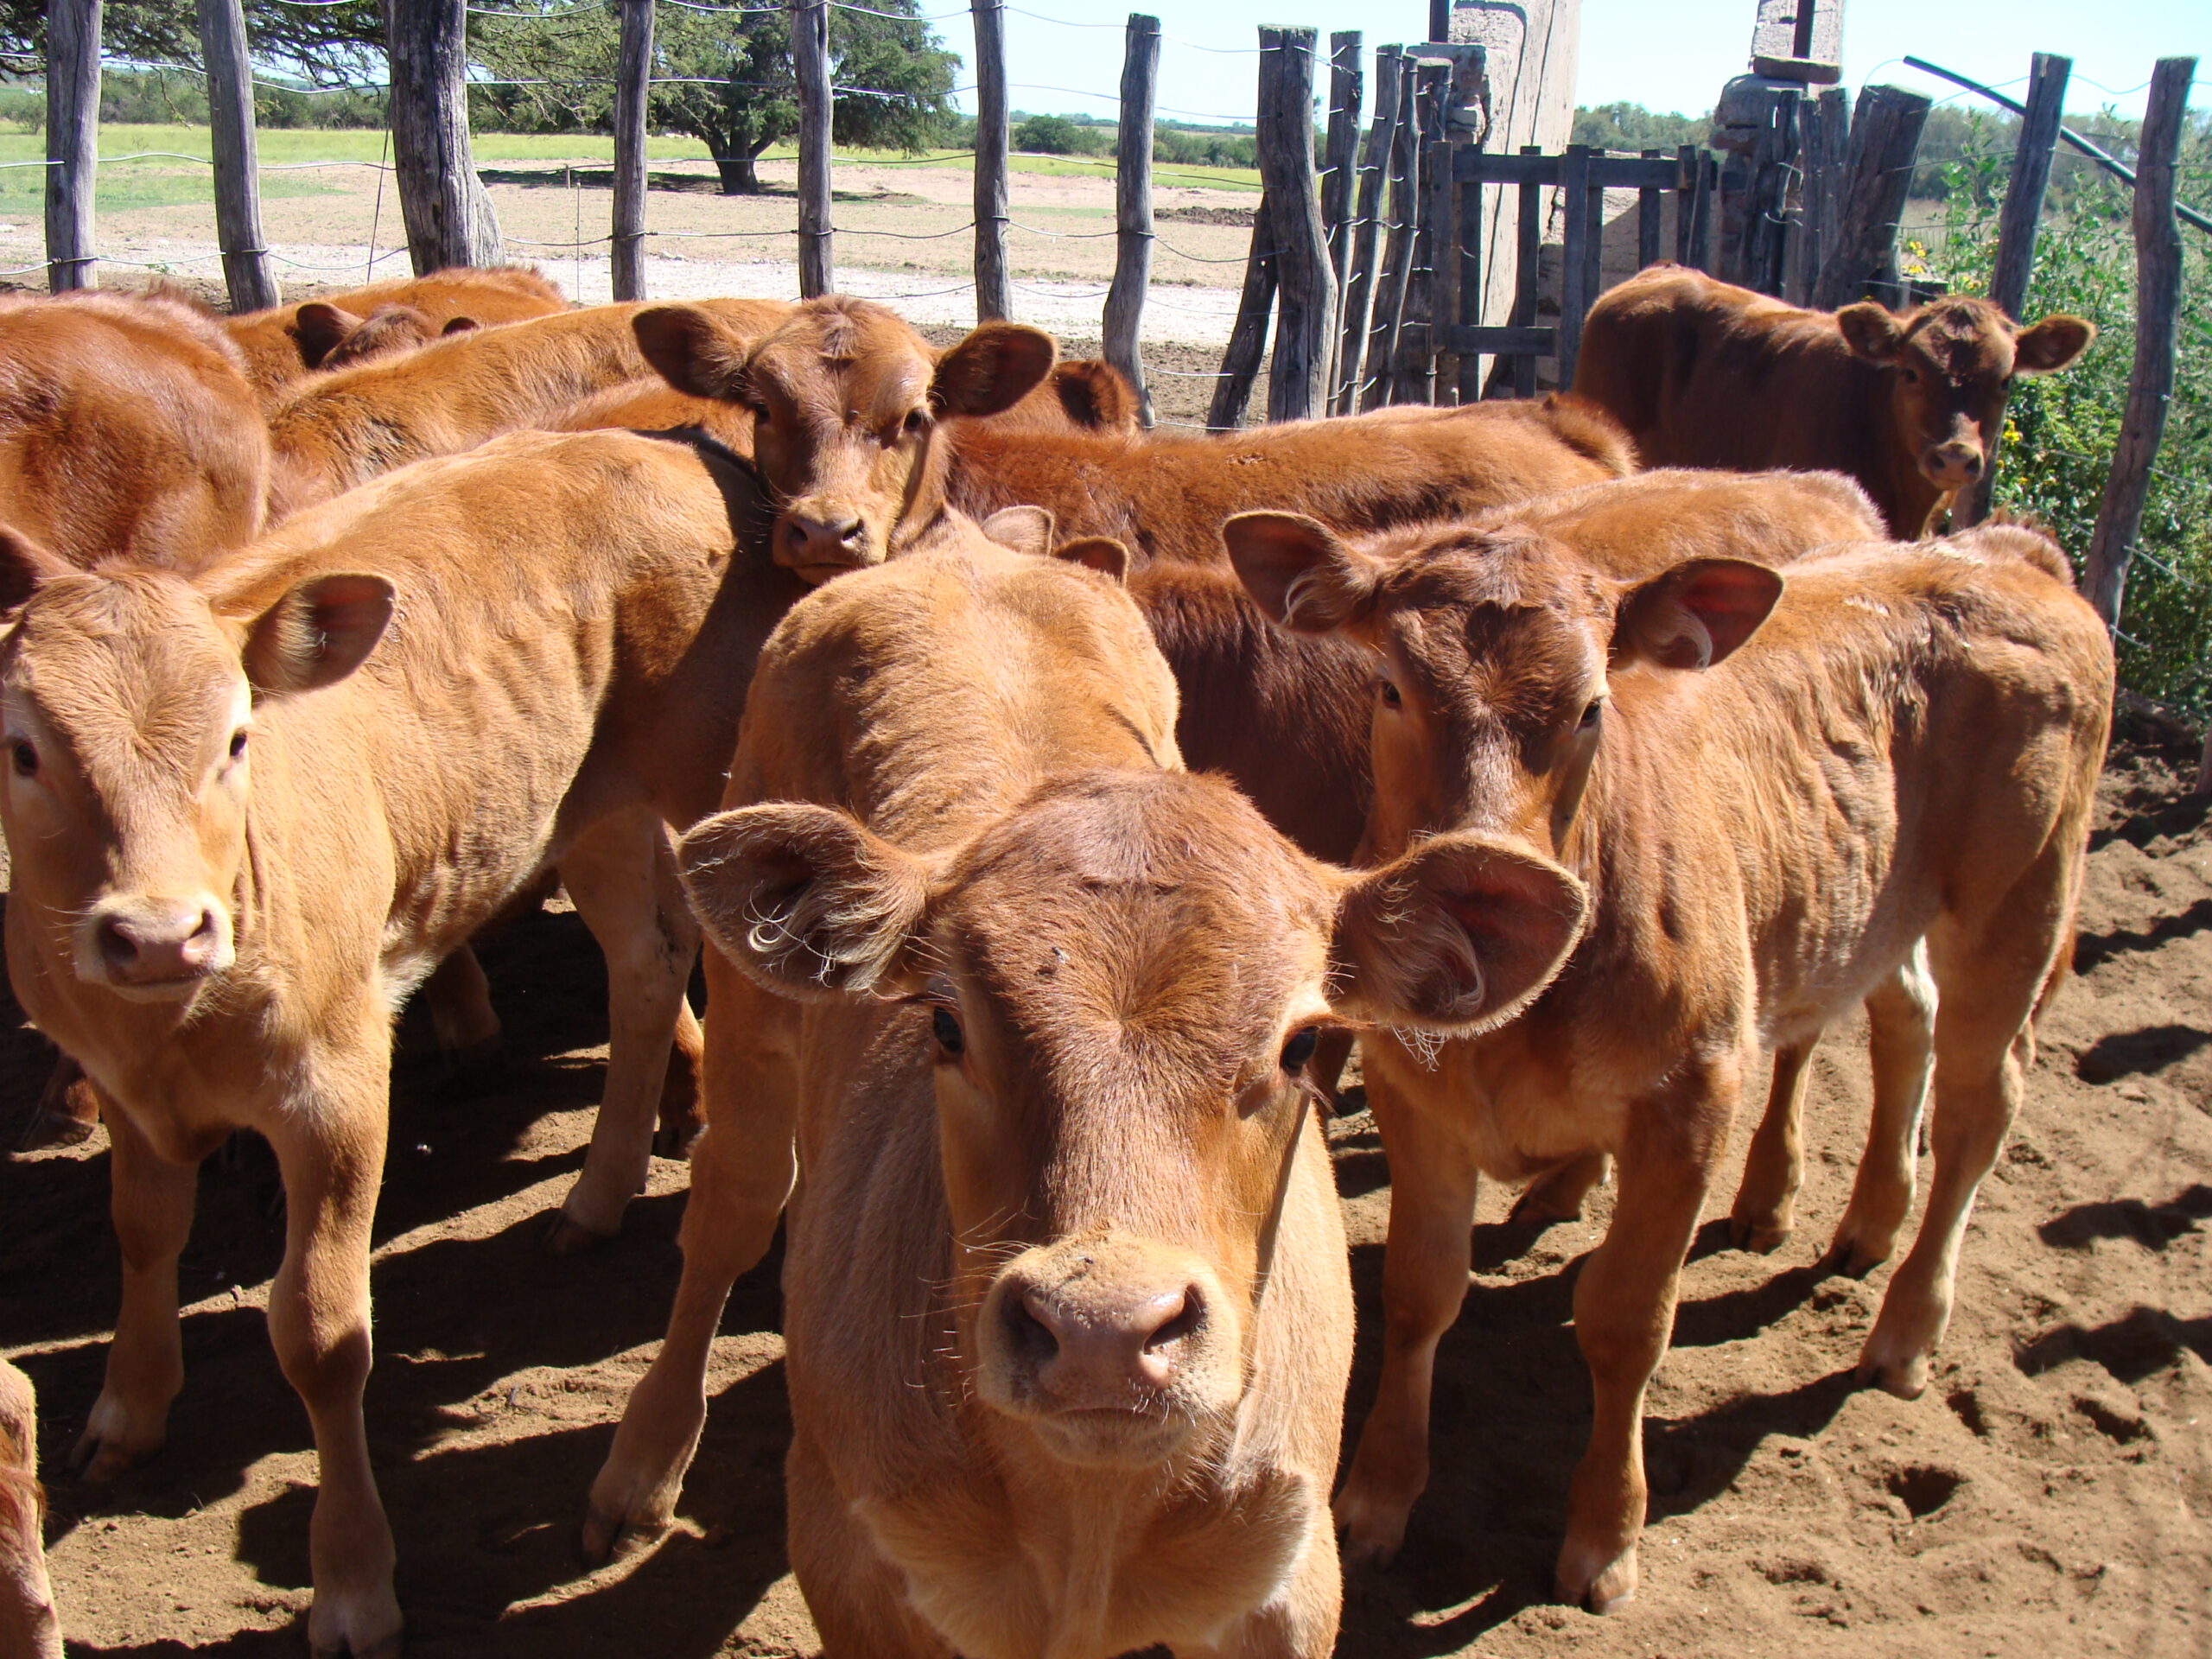 Sigue reinando la incertidumbre en el negocio de ganados y carnes